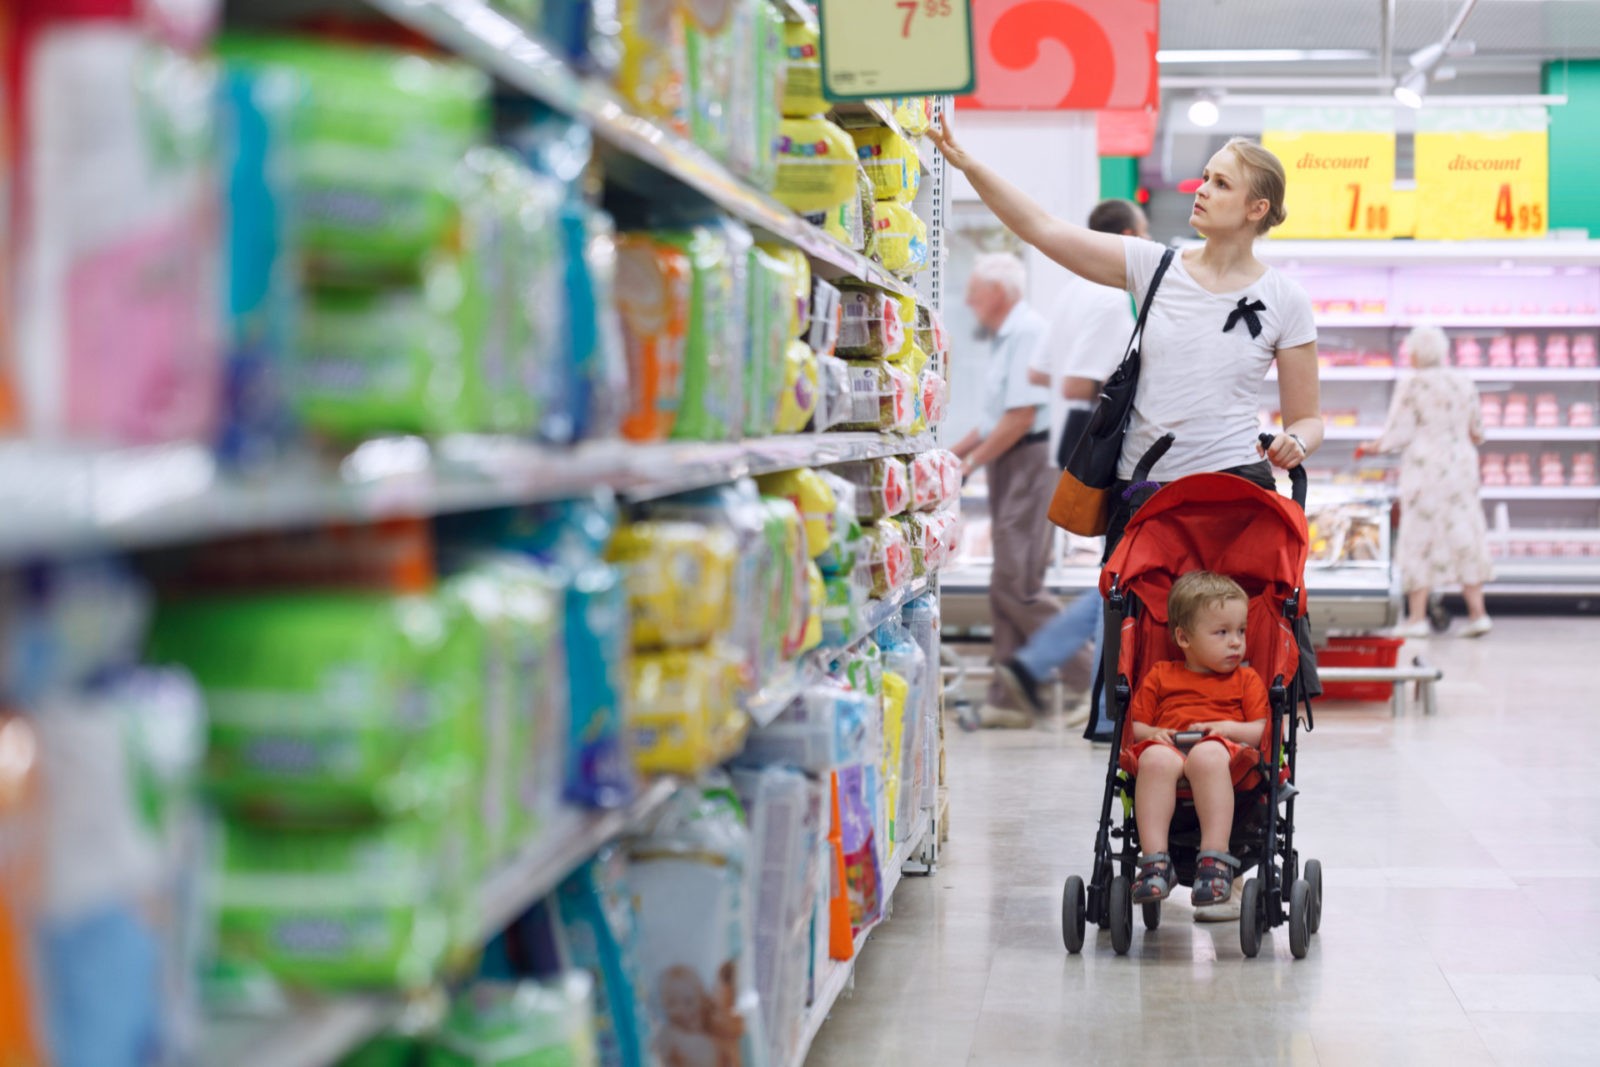 Яжмамки с колясками гуляют по магазину и мешают другим покупателям. Это невоспитанность или откровенное хамство?